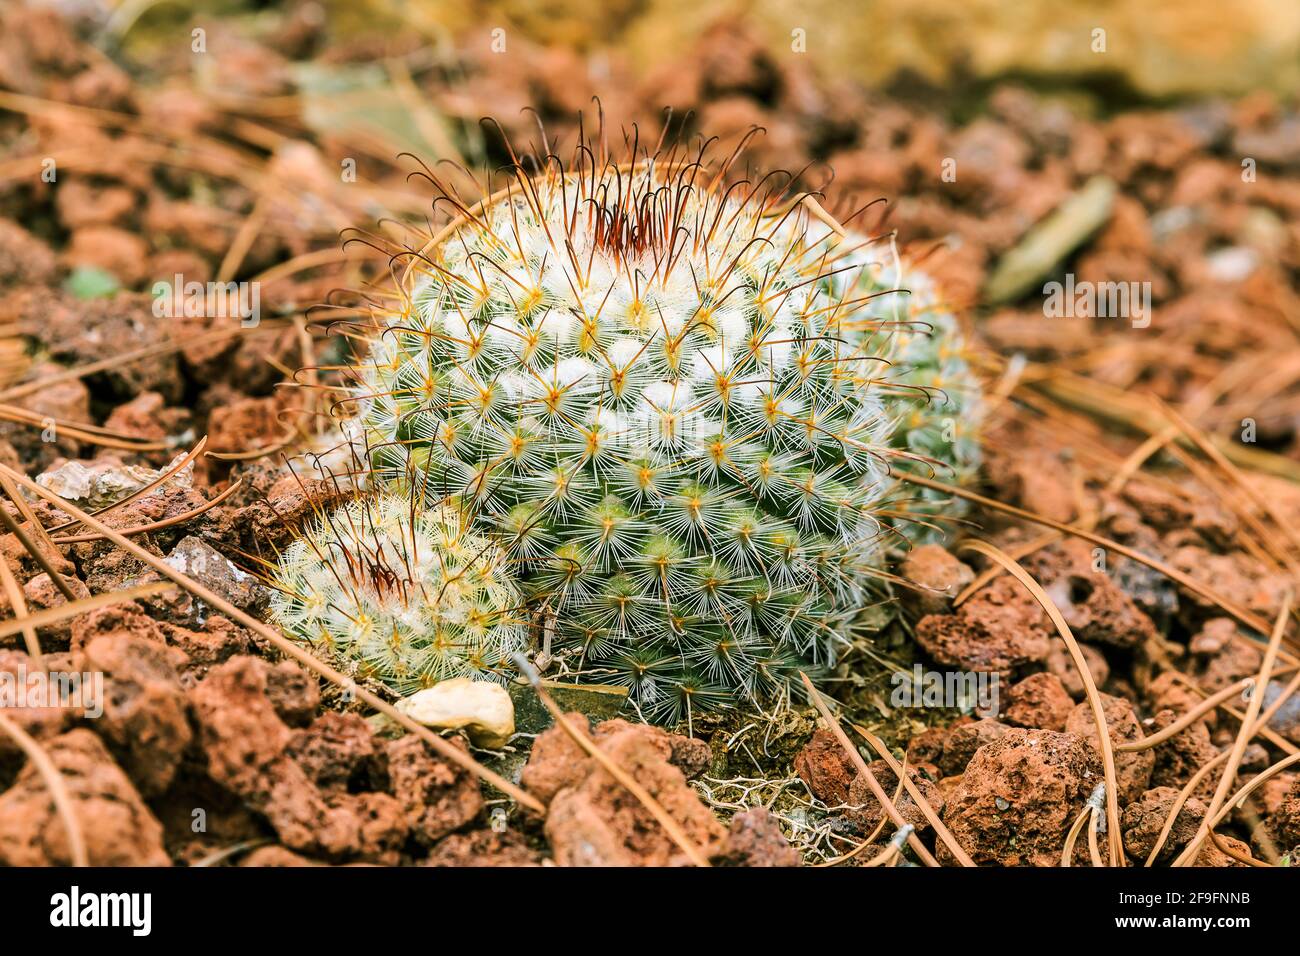 Cactus Mammillaria bombycina sur sol pierreux en automne dans une forme sphérique avec des épines et des extrémités blanches laineux sans fleurs. Pays d'origine Mexic Banque D'Images